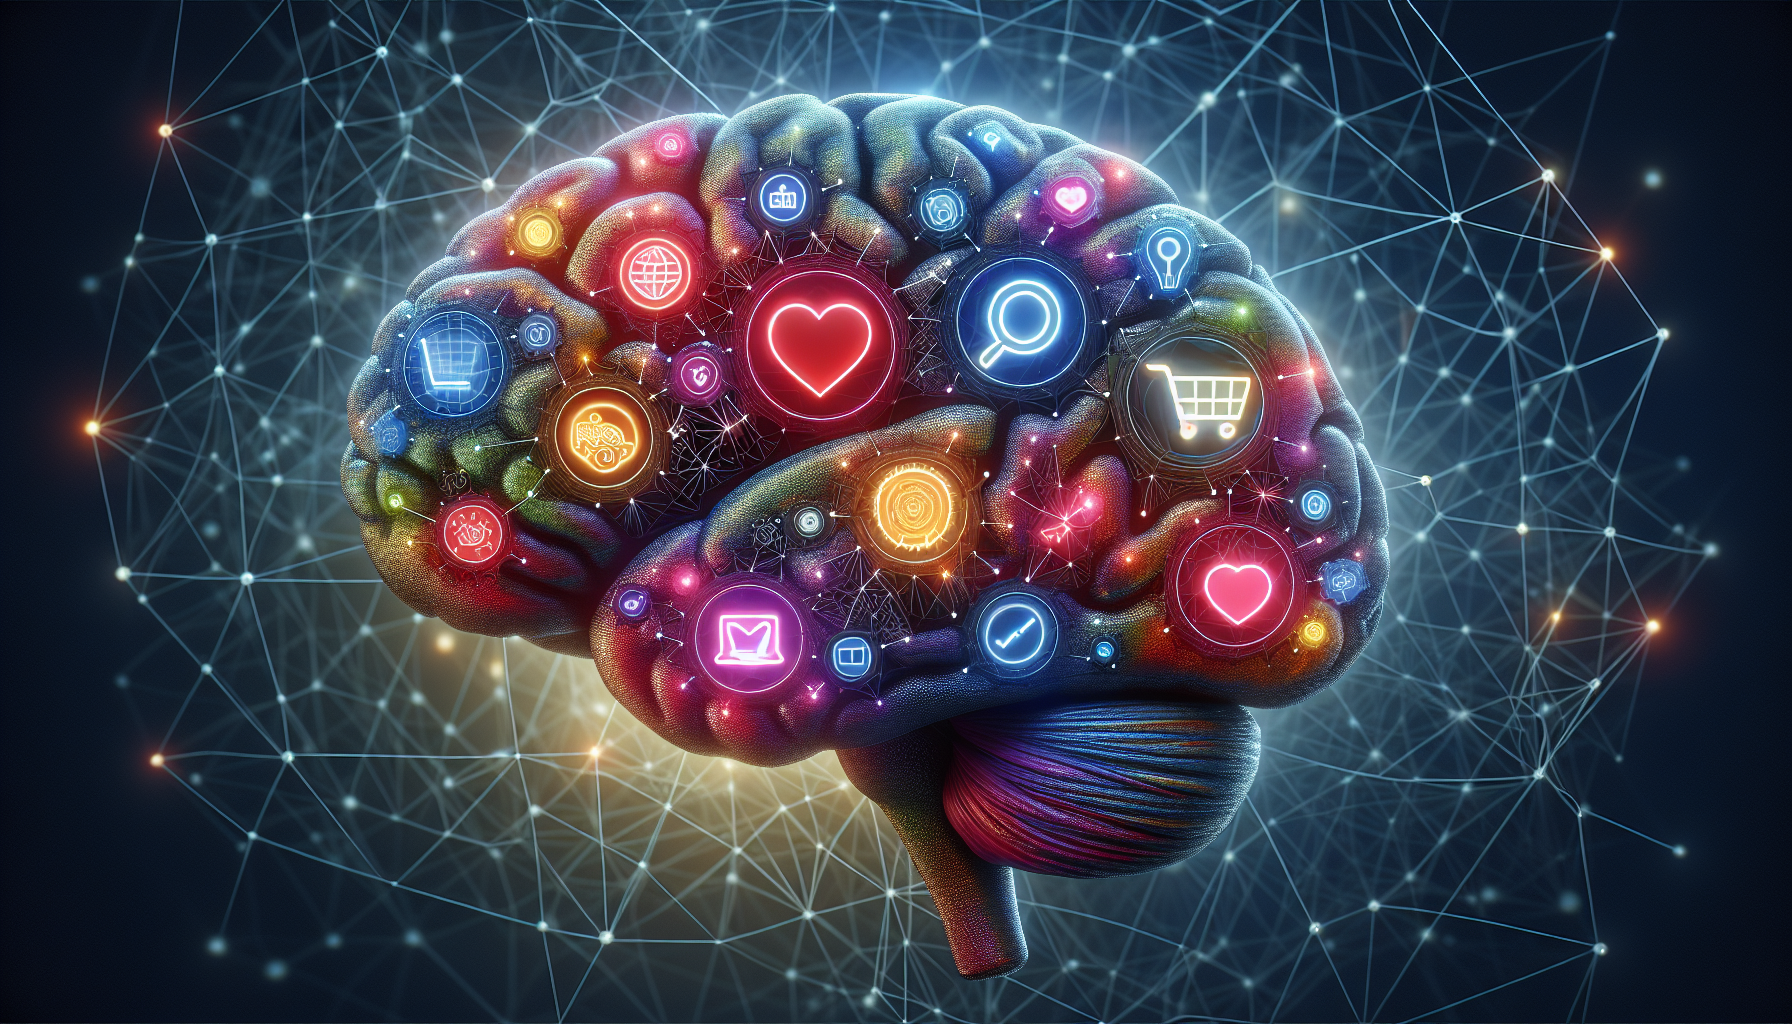 Illustratie van een brein met verschillende gebruikersgedragingen, wat de psychologie achter CRO toont